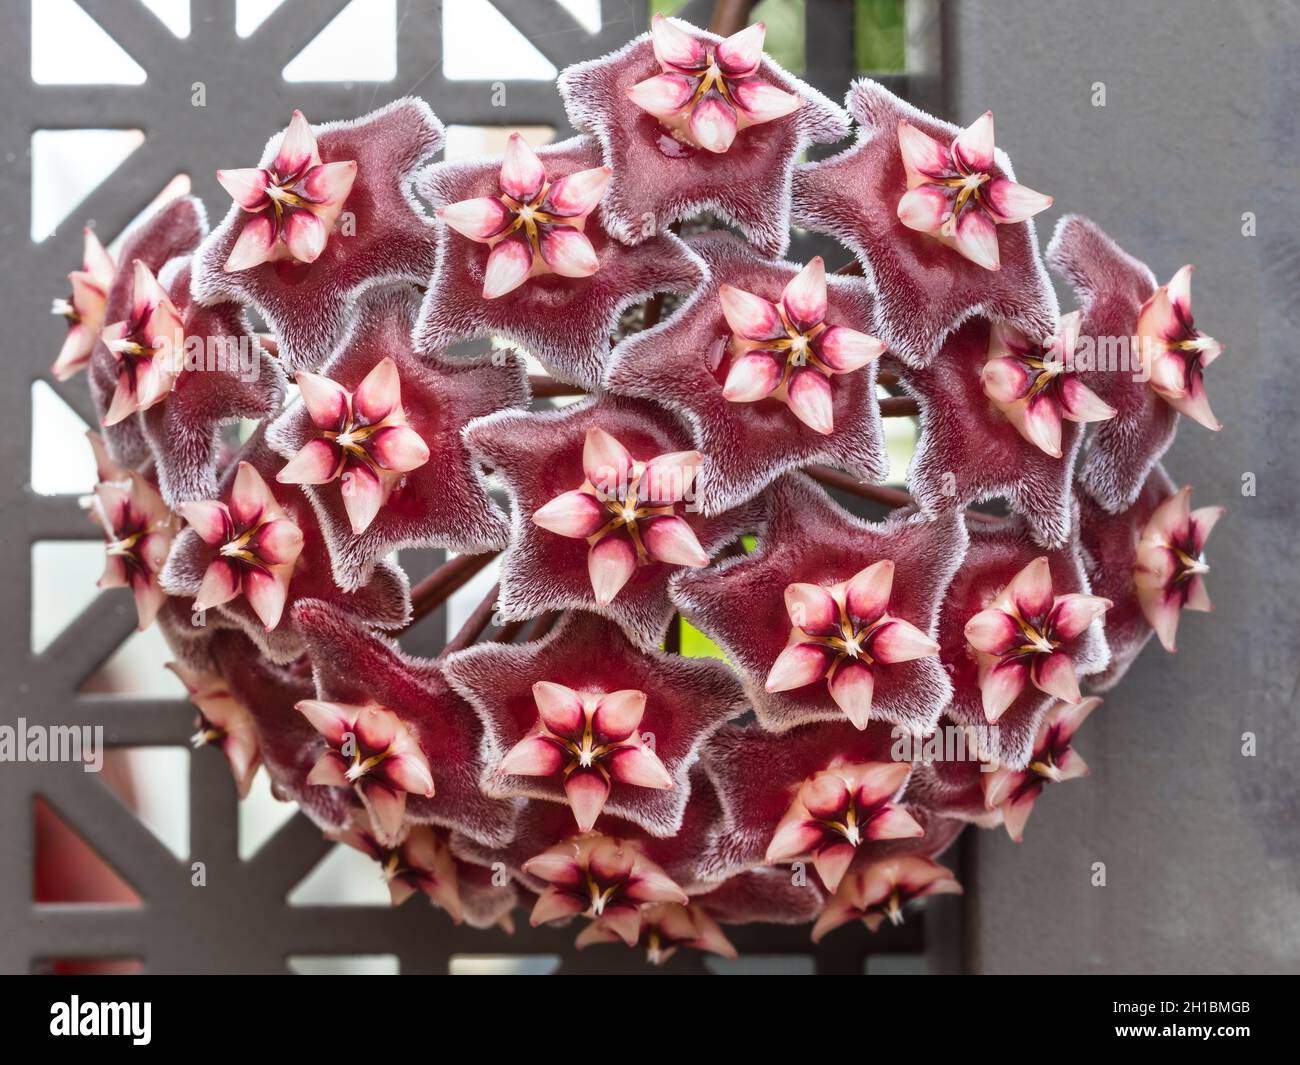 Porcelain Flowers (Hoya pubicalyx) Stock Photo